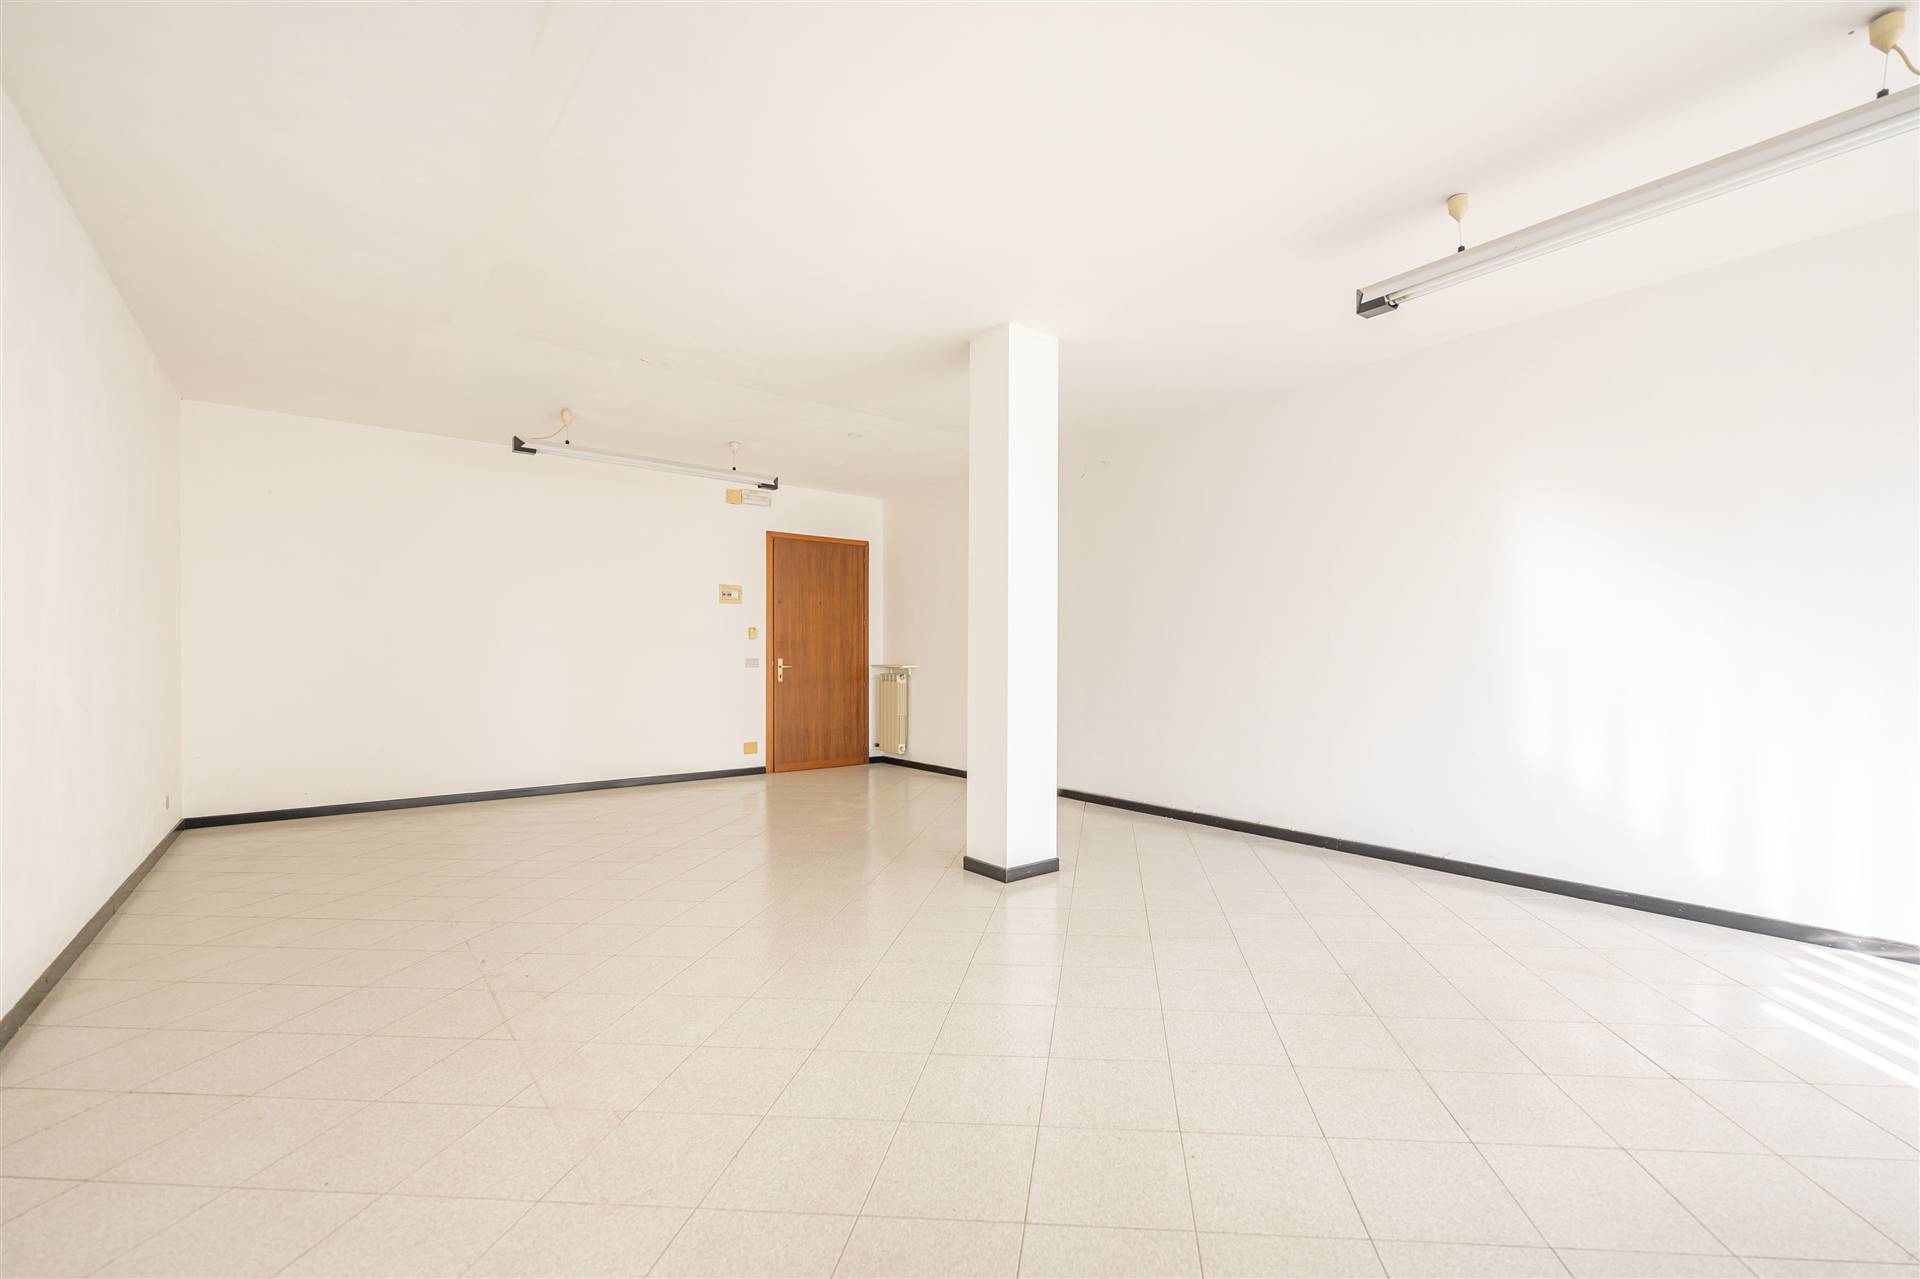 Appartamento in vendita a Villanova di Camposampiero, 2 locali, prezzo € 59.000 | PortaleAgenzieImmobiliari.it